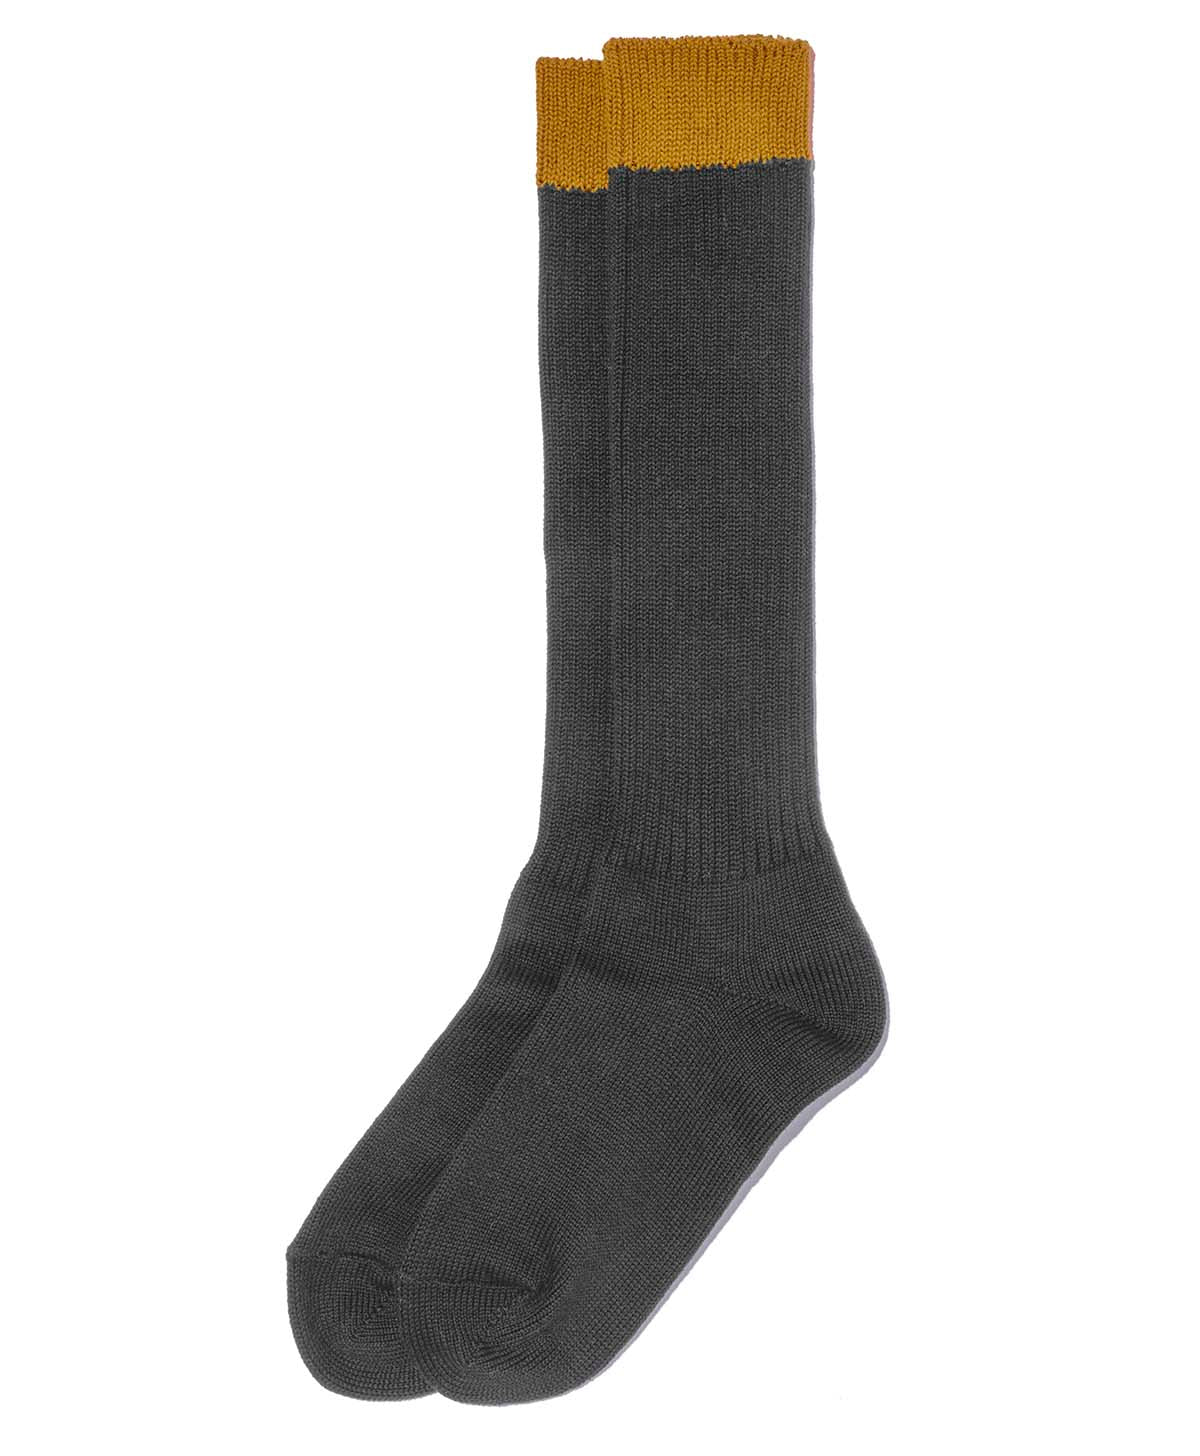 Botas calcetines / carbón gris / amarillo (mujer)